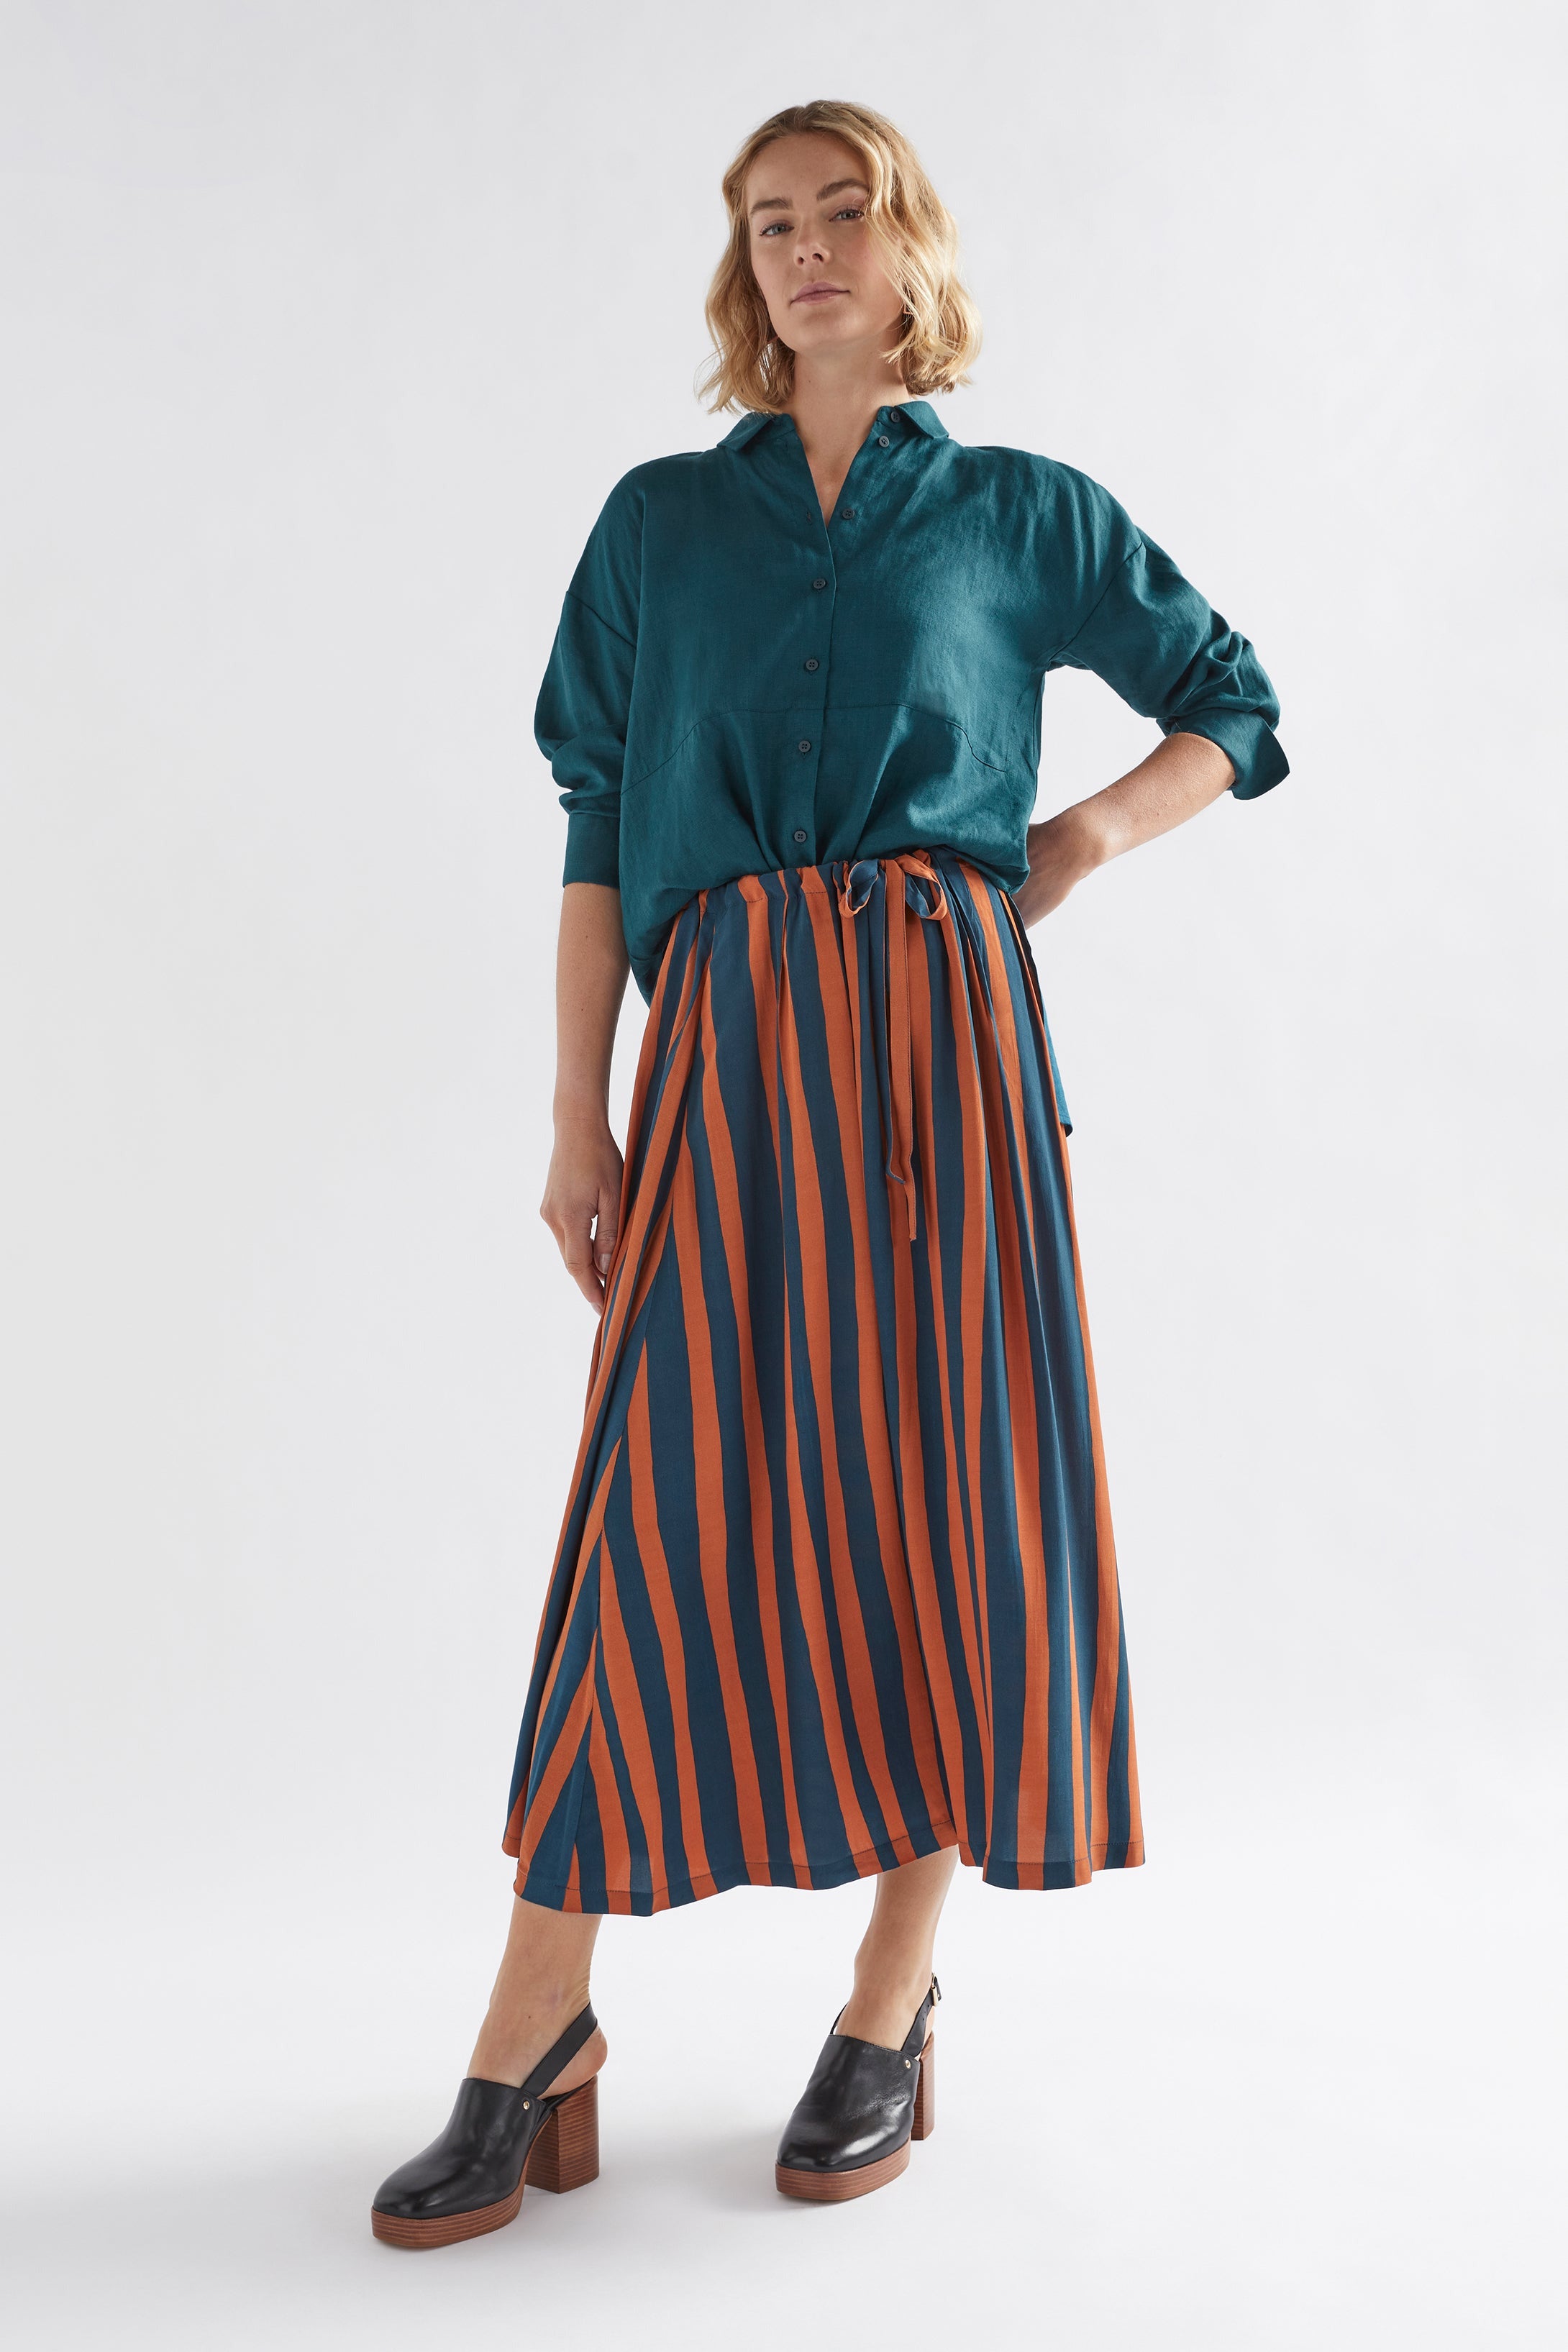 Tilbe Skirt - Bronze/Teal Paint Stripe